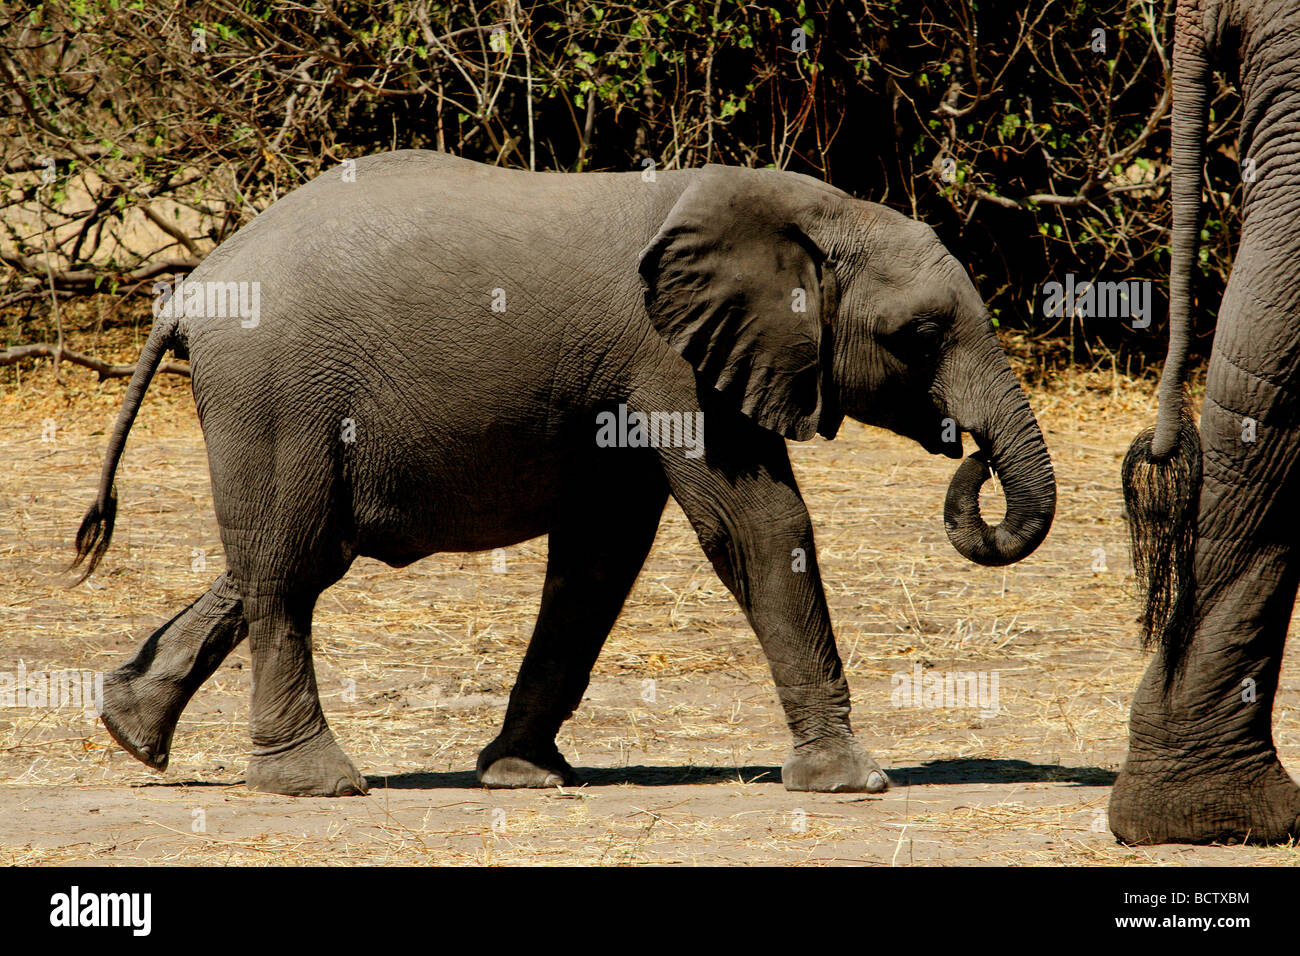 Africa vitello di elefante africano (Loxodonta africana) a seguito di sua madre a camminare in una foresta, Parco Nazionale Chobe, Botswana Foto Stock